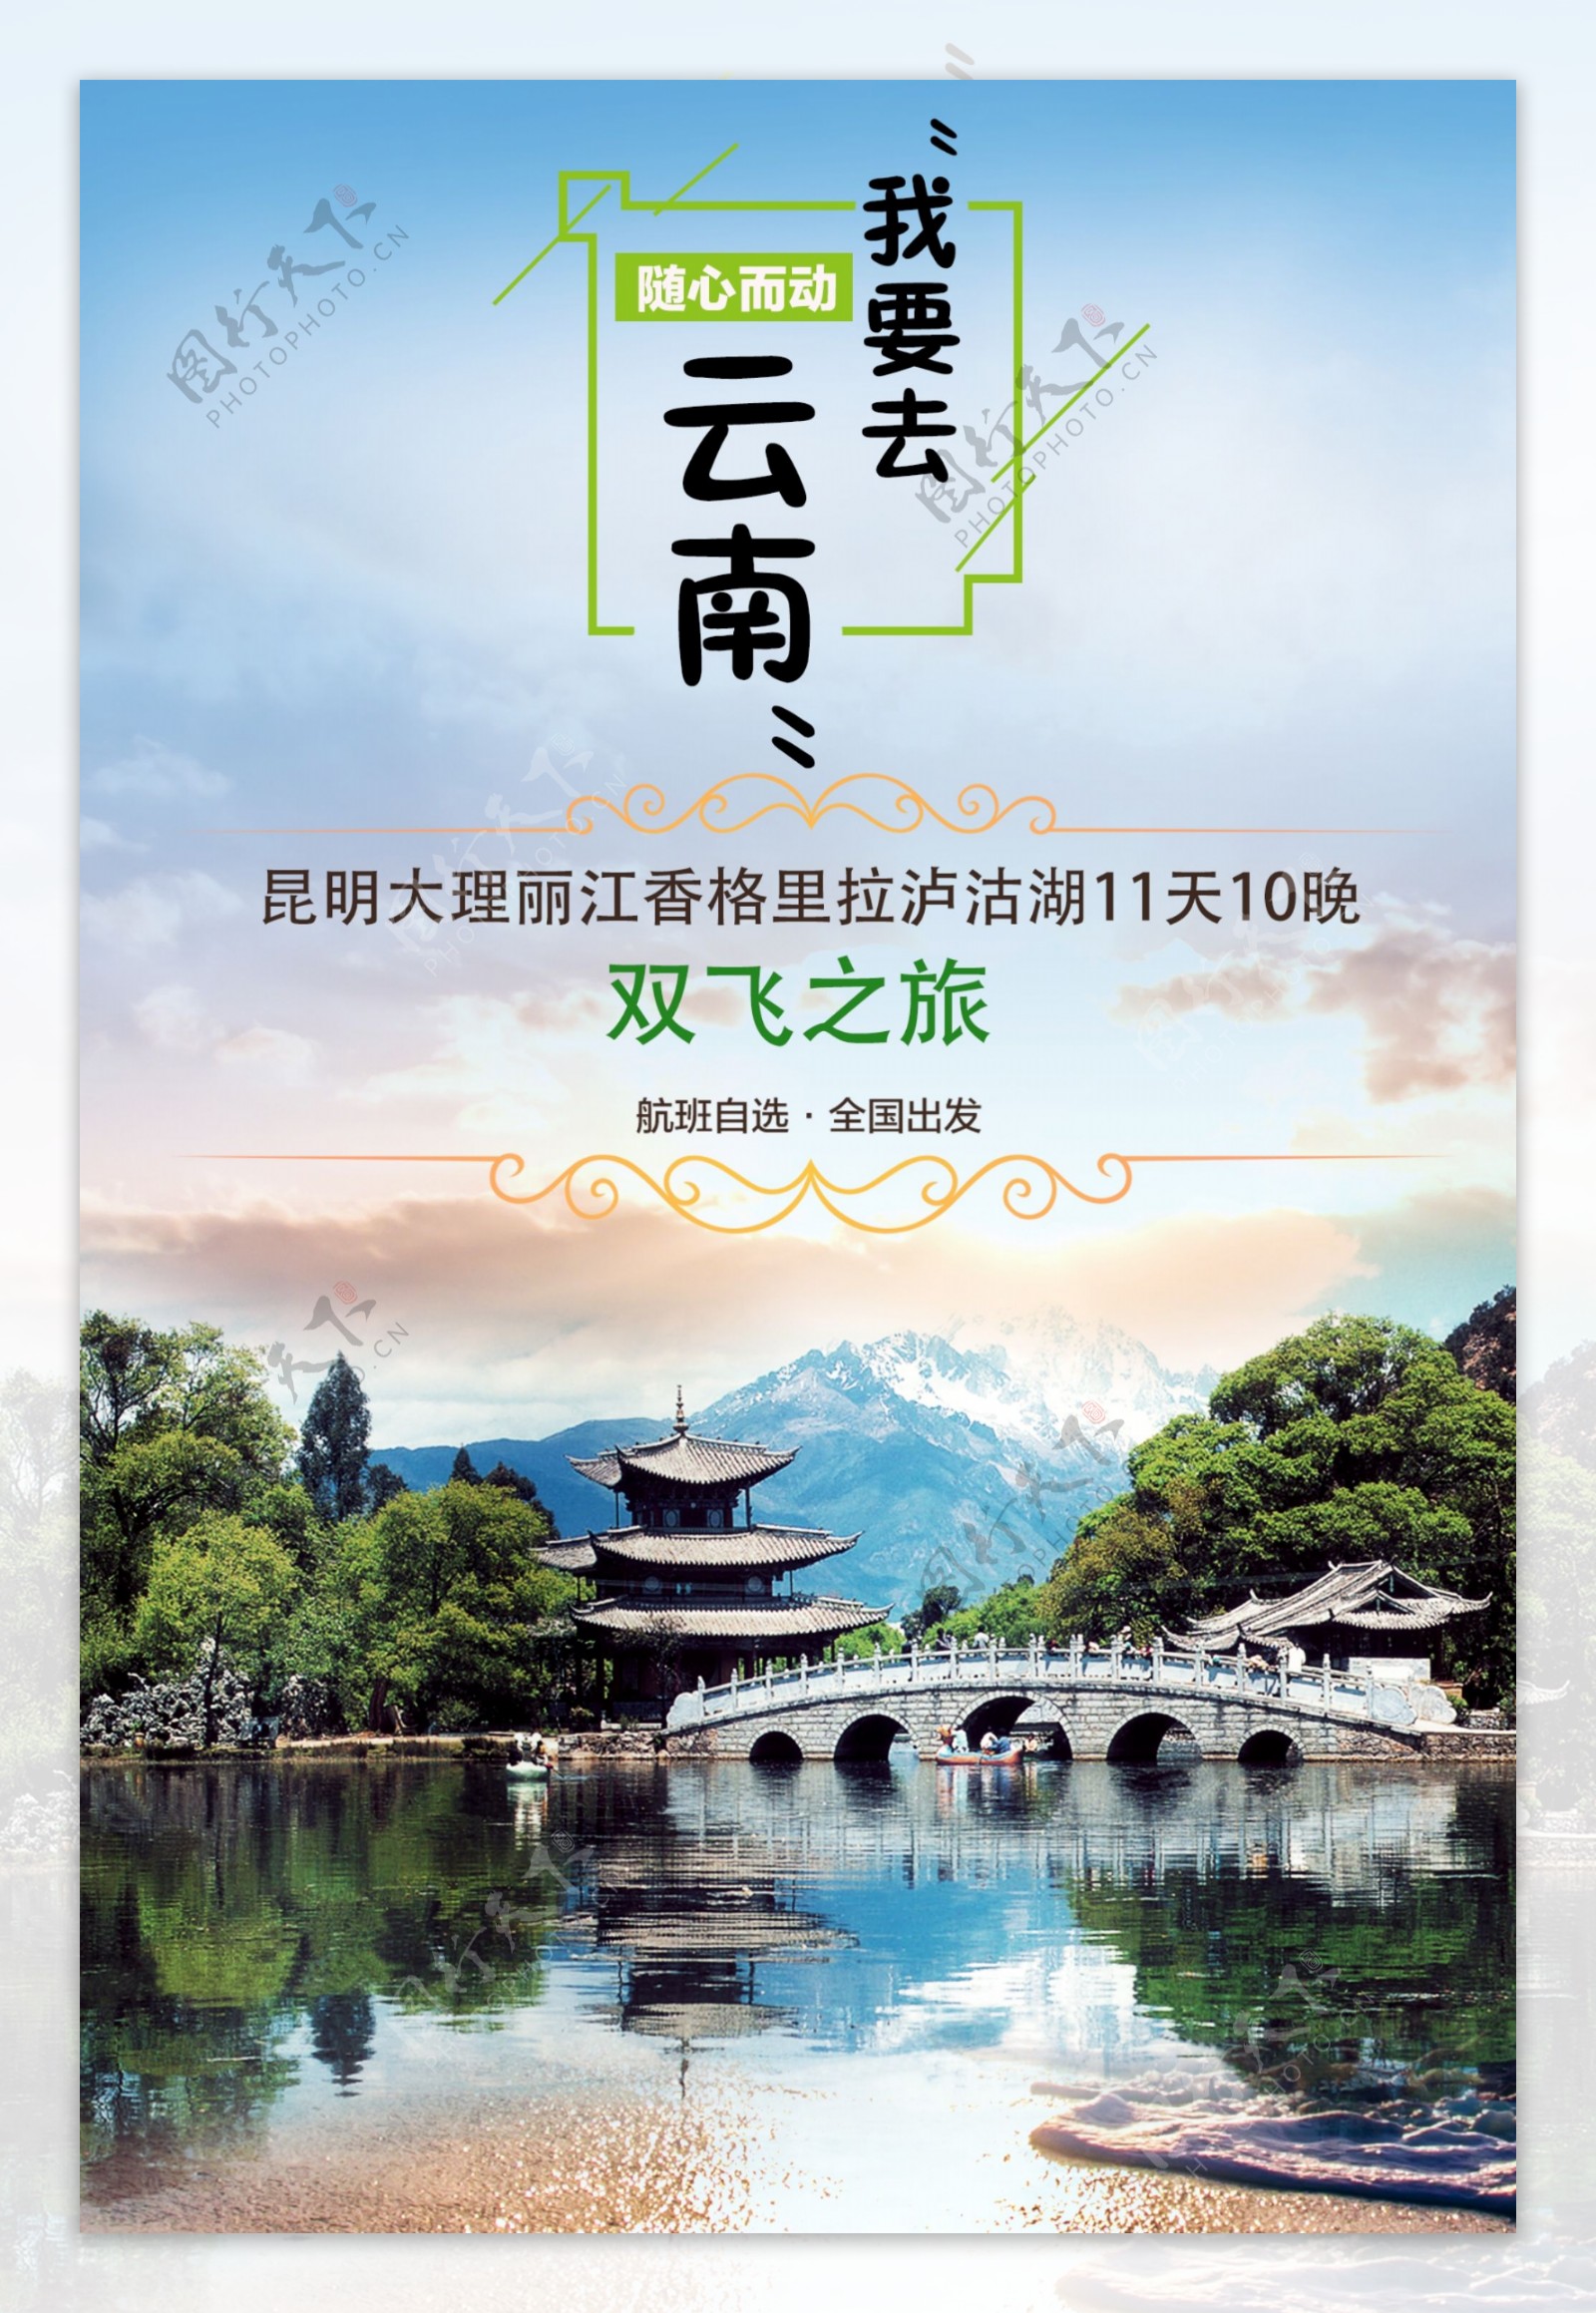 我要去云南旅游海报